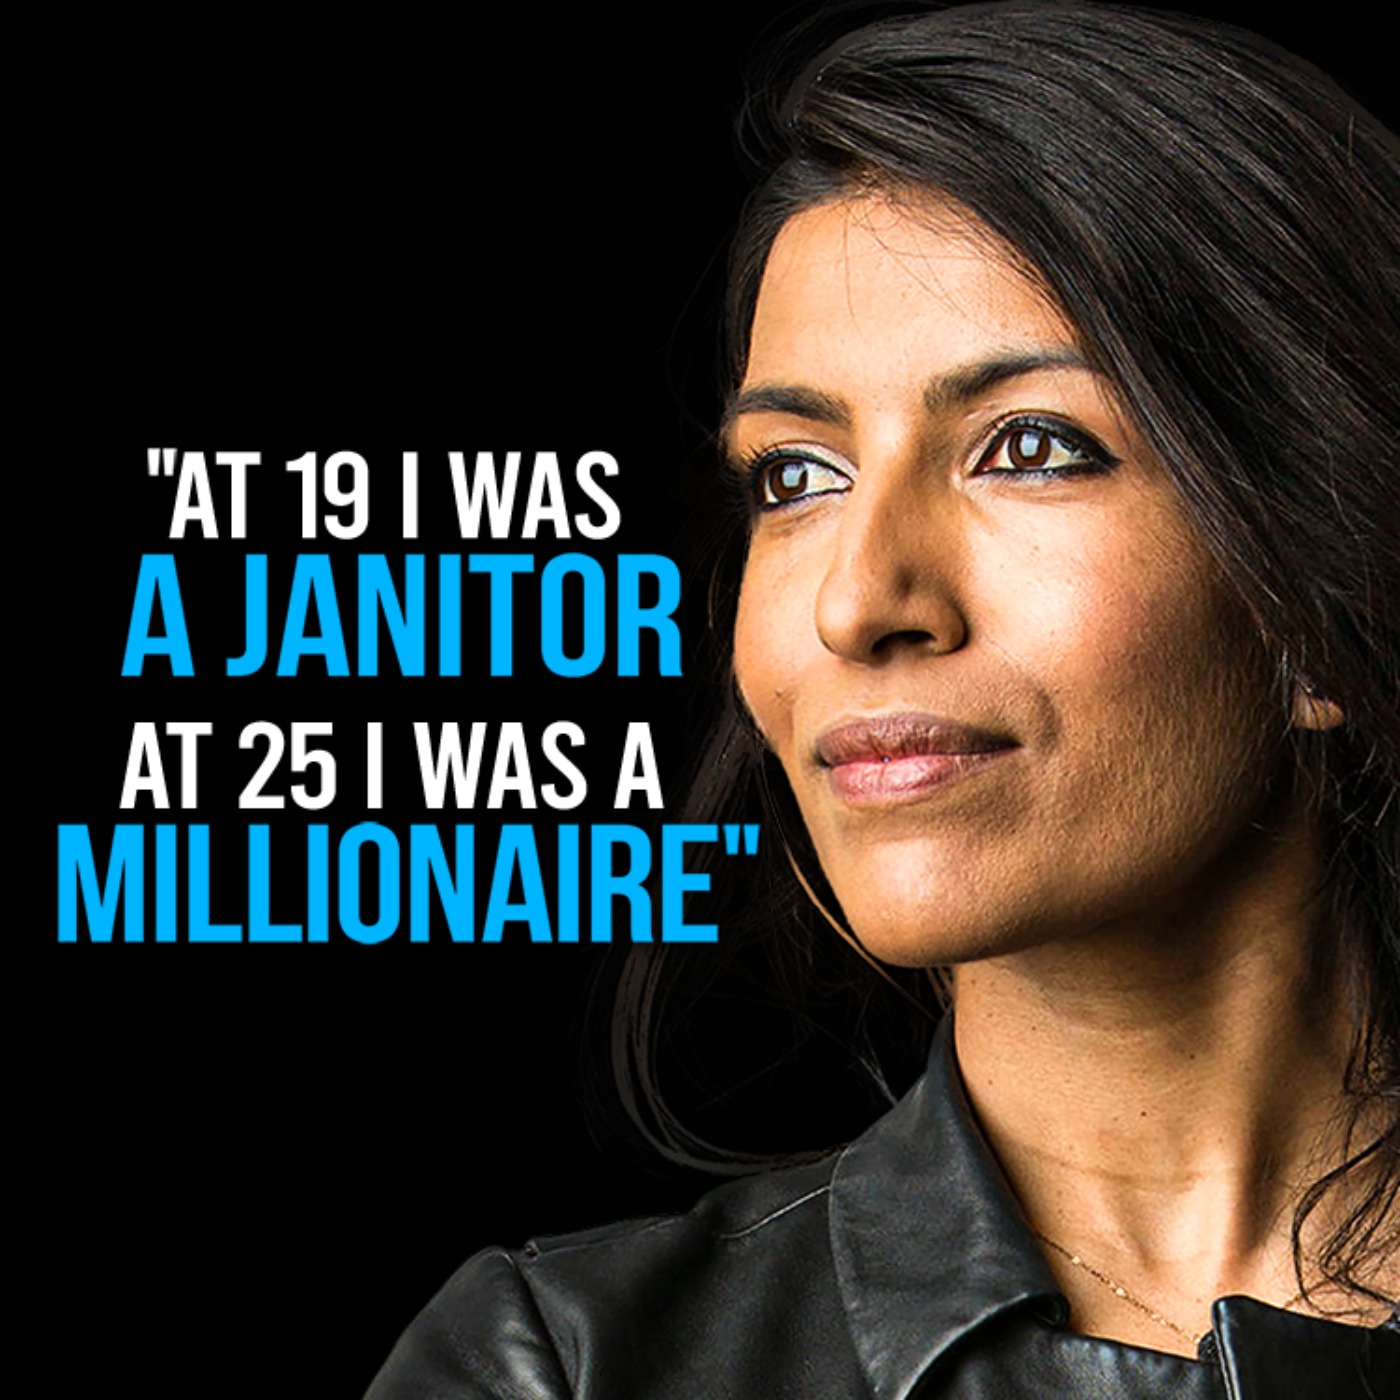 Multi-Millionaire Explains Her Simple Steps to Success